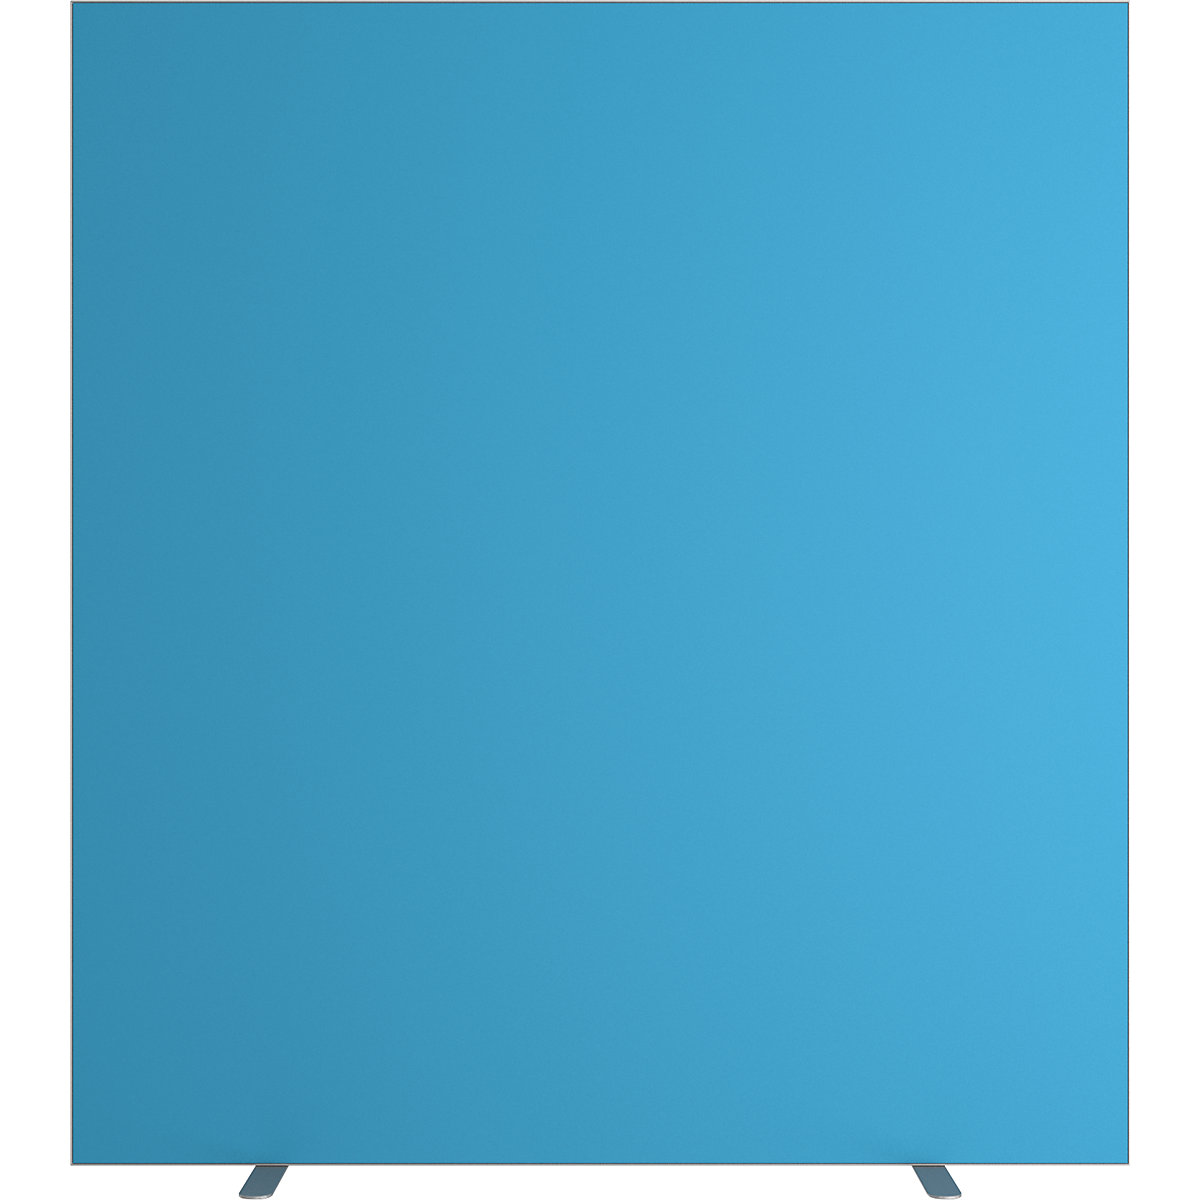 Pared separadora easyScreen, monocolor, con aislamiento acústico, azul, anchura 1600 mm-7